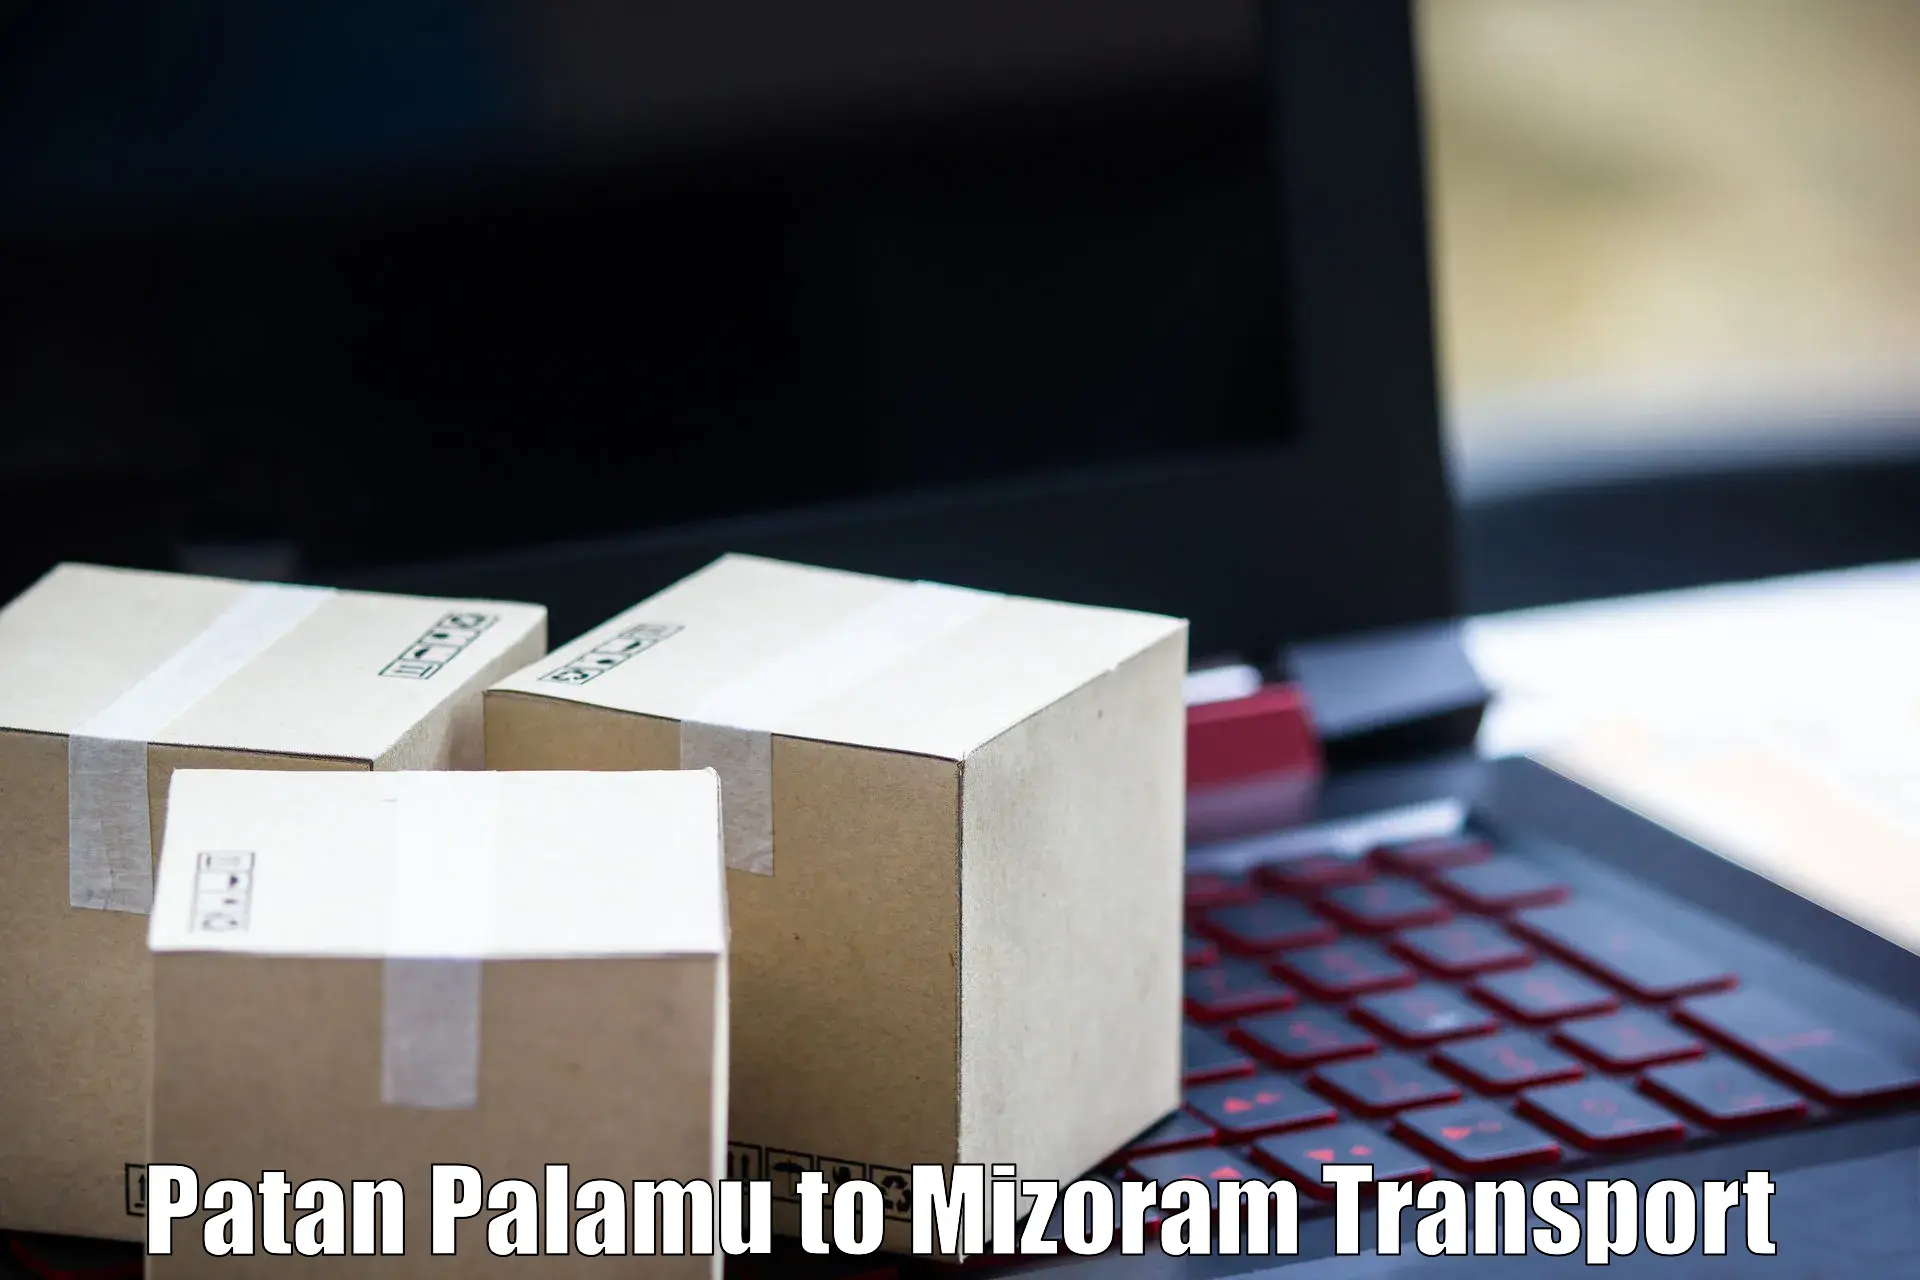 Vehicle transport services Patan Palamu to Aizawl